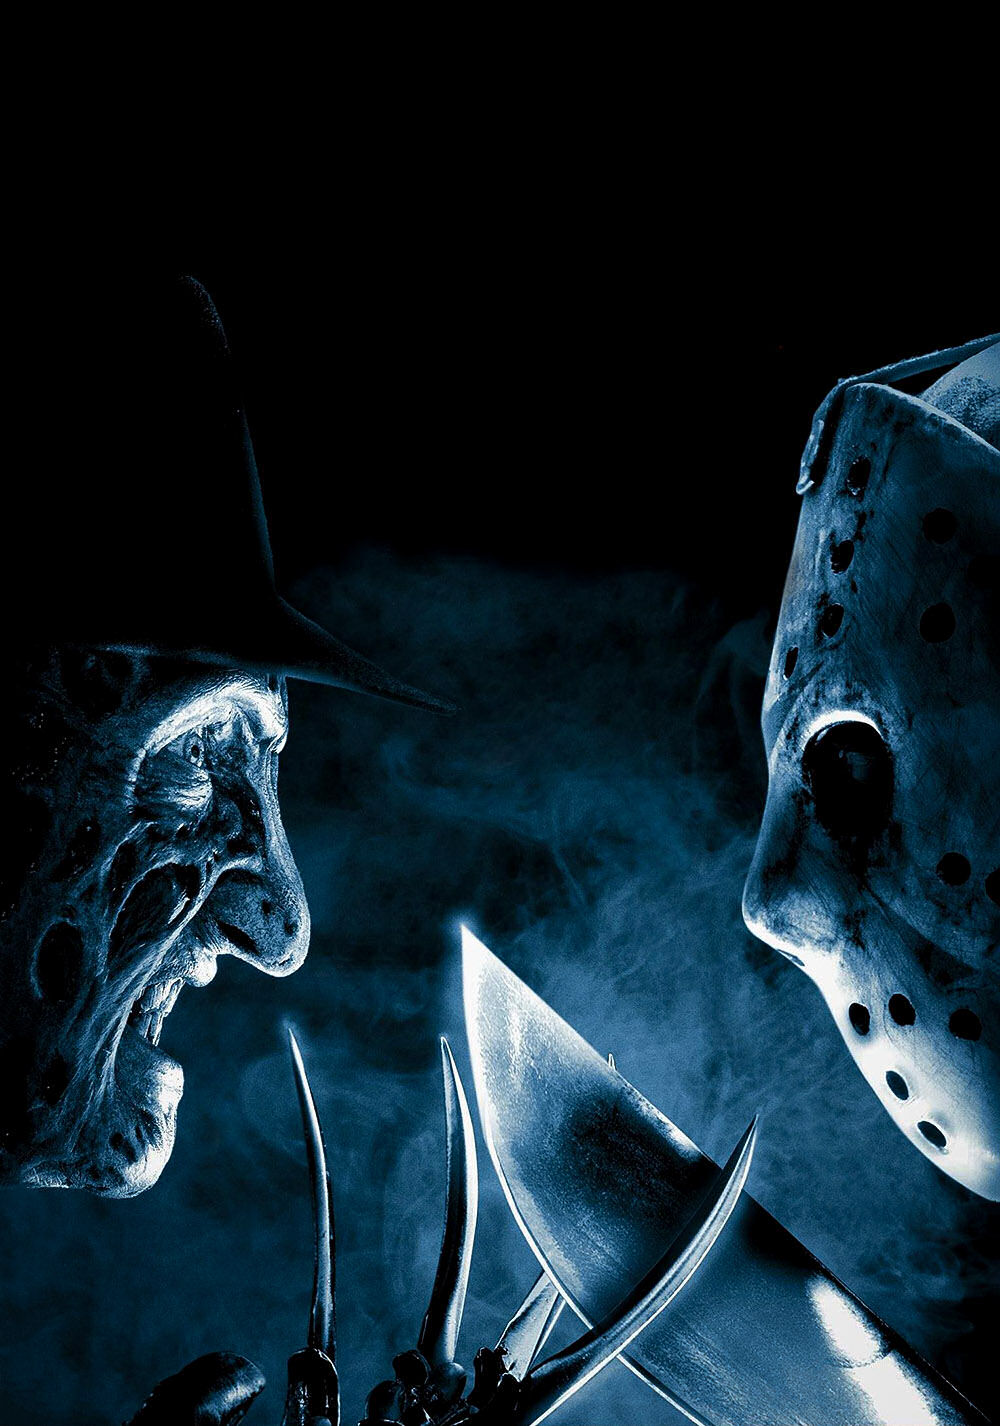 Freddy vs. Jason Picture